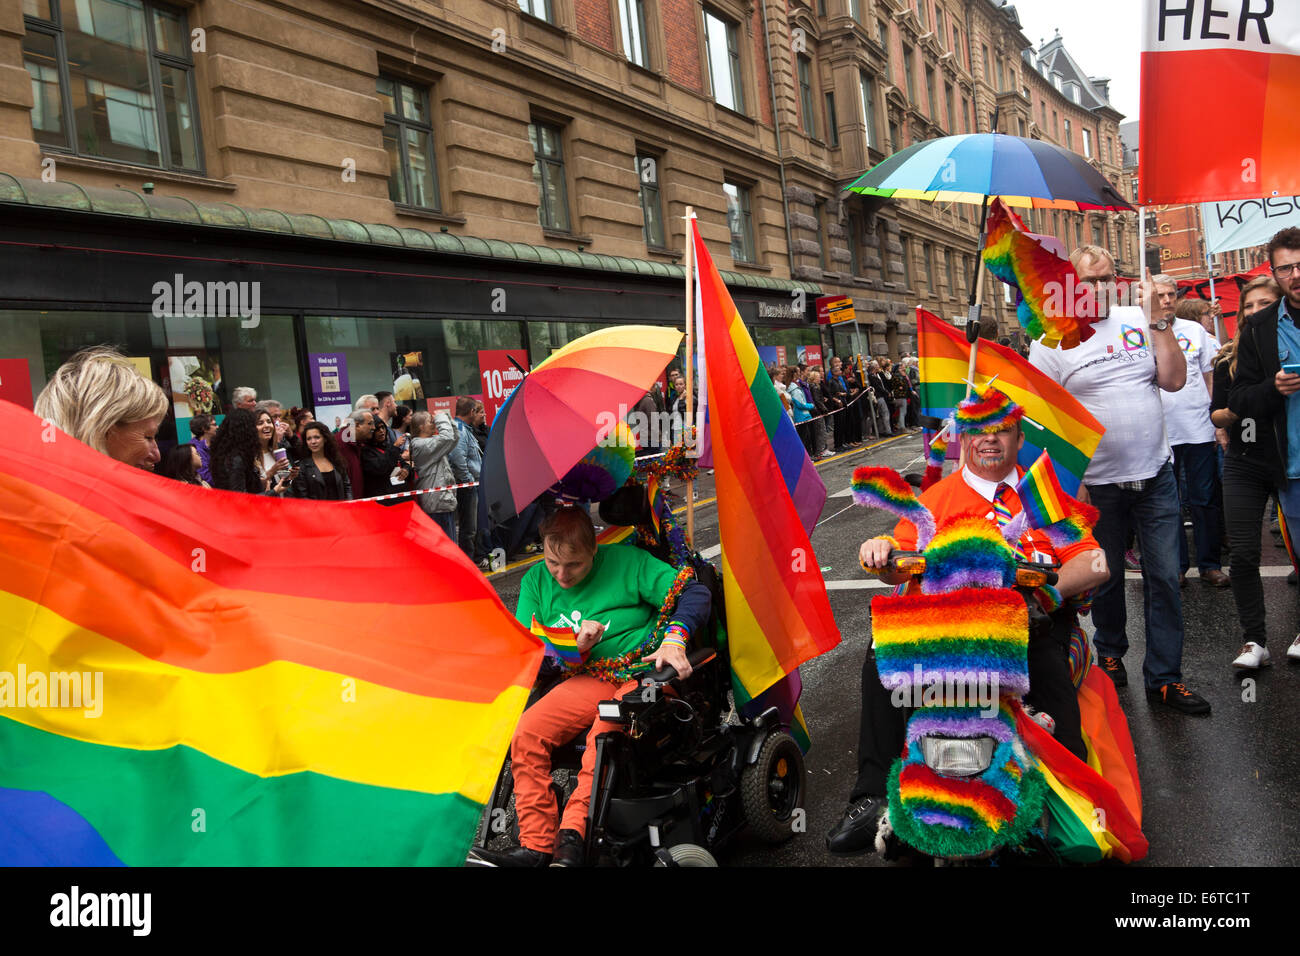 Copenhagen, Danimarca. Il 30 agosto, 2014. Copenhagen Pride Week 2014 conclude è 4 giorni di evento con un 3 ore di lunga e spettacolare Pride Parade attraverso la parte interna della città di Copenhagen. Più di 20.000 persone hanno partecipato alla sfilata che è stata accolta da alcune centinaia di migliaia di spettatori lungo il percorso, gli organizzatori di stime. Sulla foto 2 (foto, metà) 2 portatori di handicap in carrozzina con l'orgoglio bandiera prende parte alla parata. Credito: OJPHOTOS/Alamy Live News Foto Stock